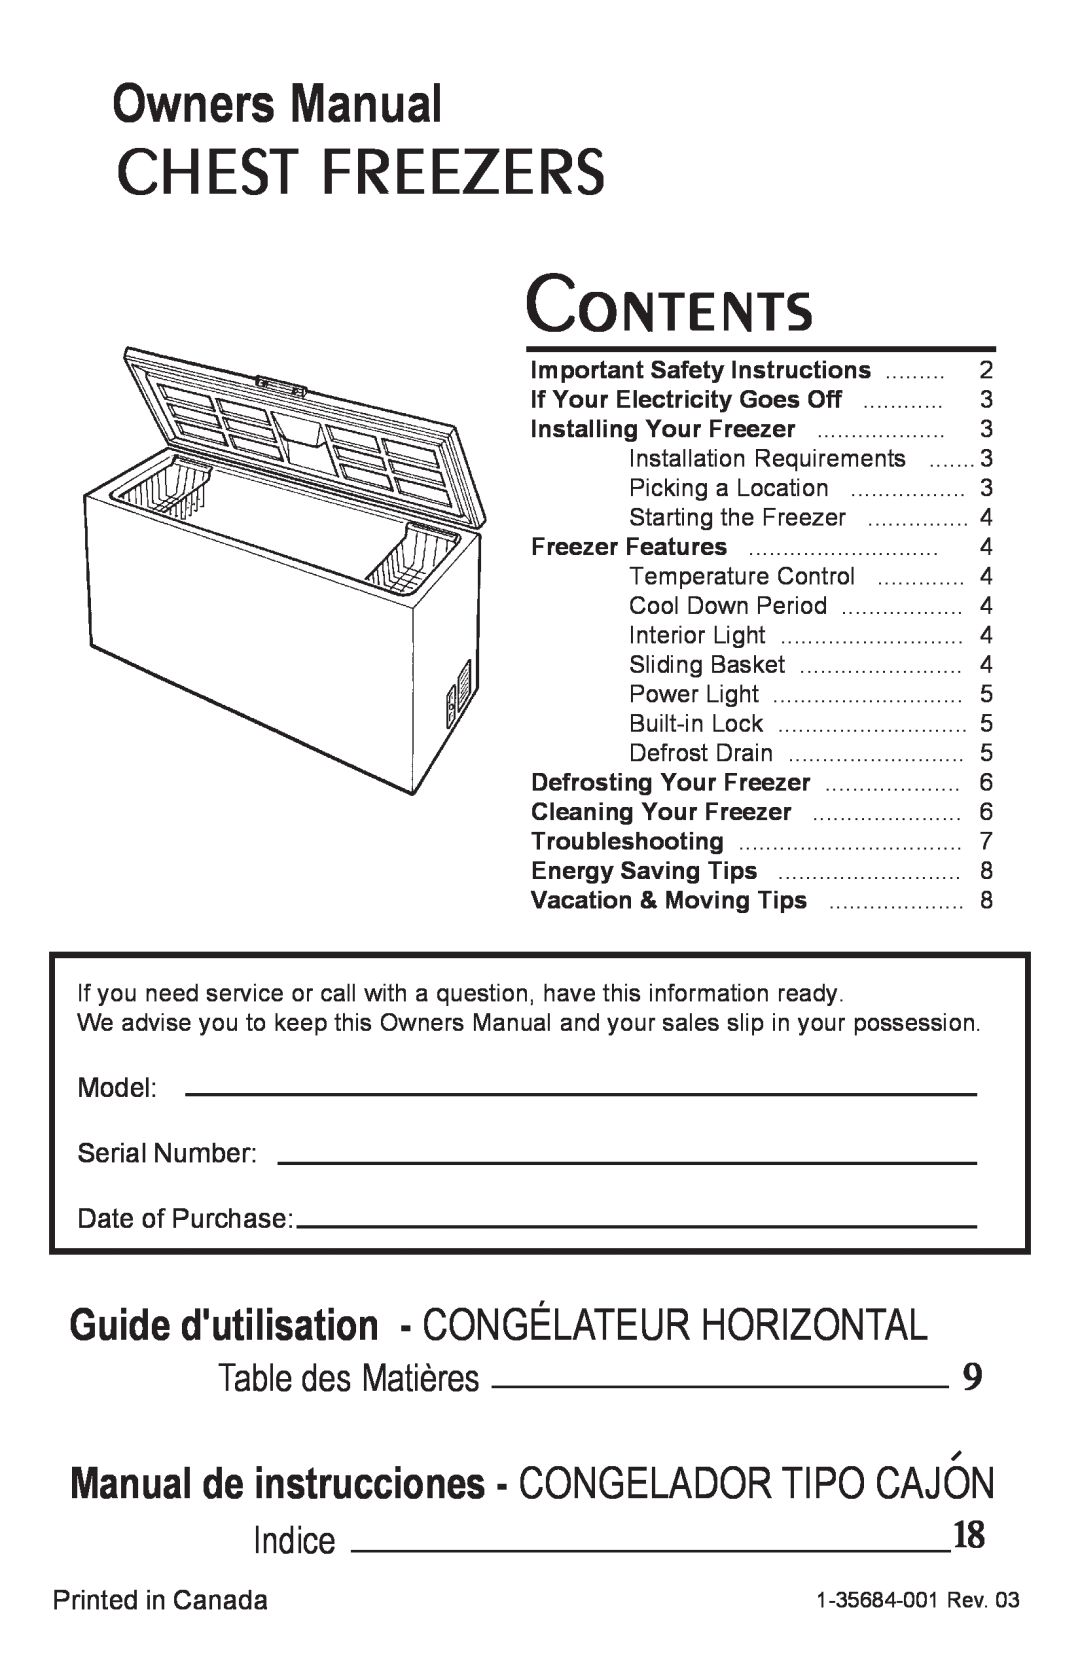 Danby DCF1014WE owner manual Chest Freezers, Guide dutilisation - CONGÉLATEUR HORIZONTAL, Table des Matières, Indice 